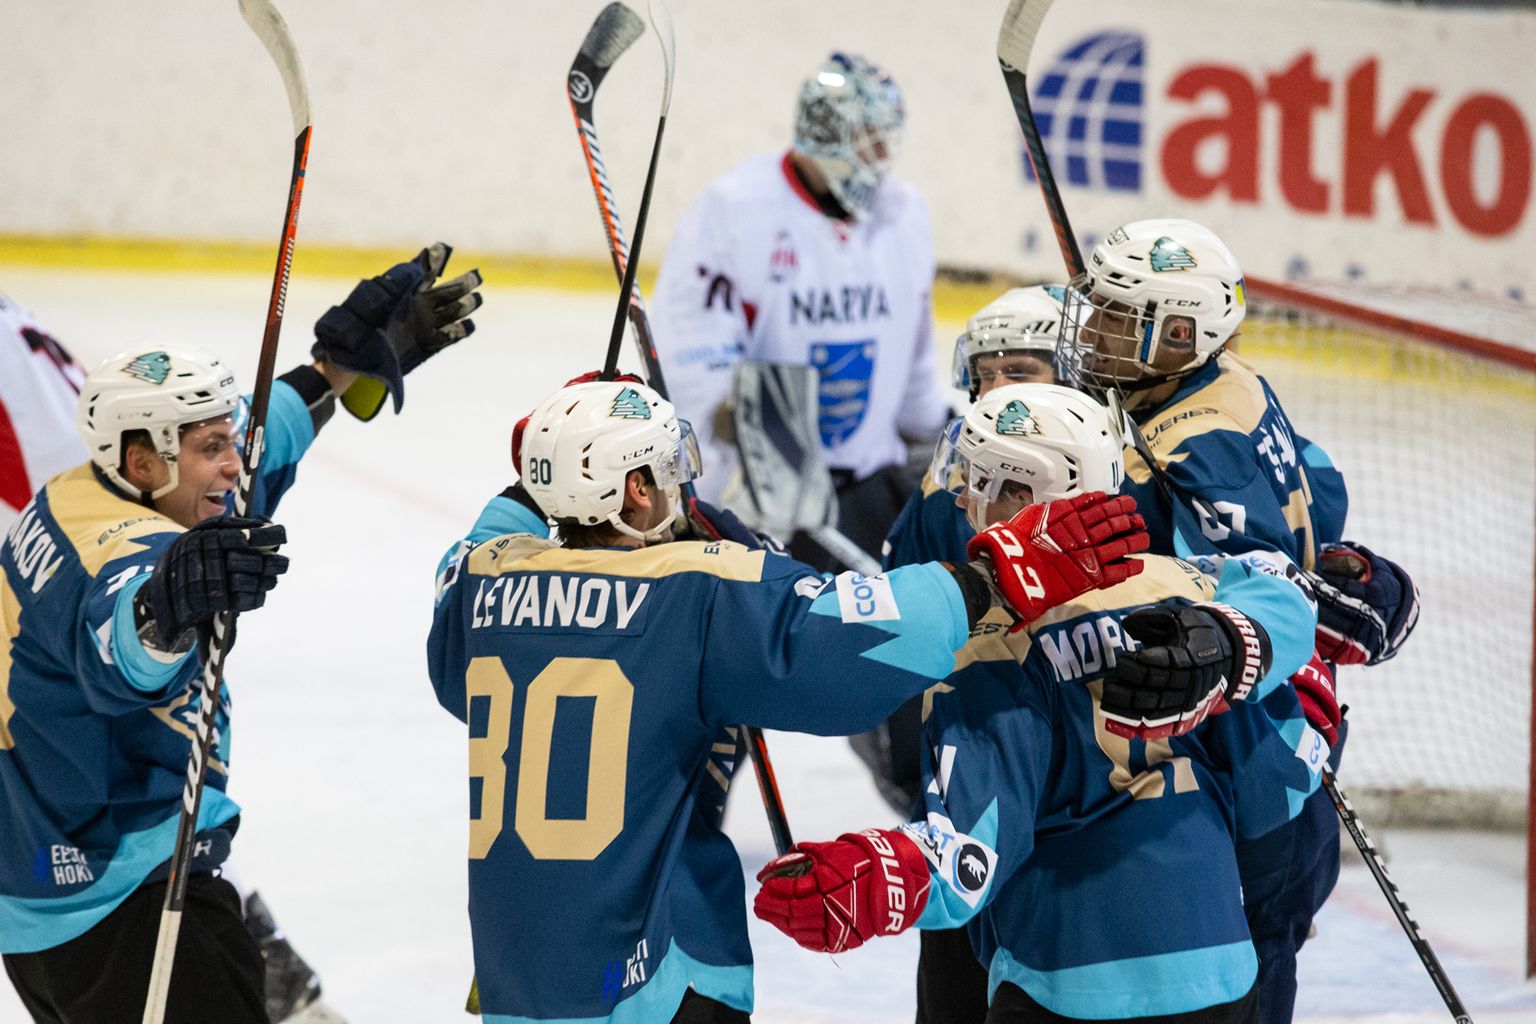 У хоккеистов кохтла-ярвеского "Everest" есть повод радоваться как завоеванию первой медали чемпионата Эстонии, так и победе над извечным домашним соперником - Нарвой.